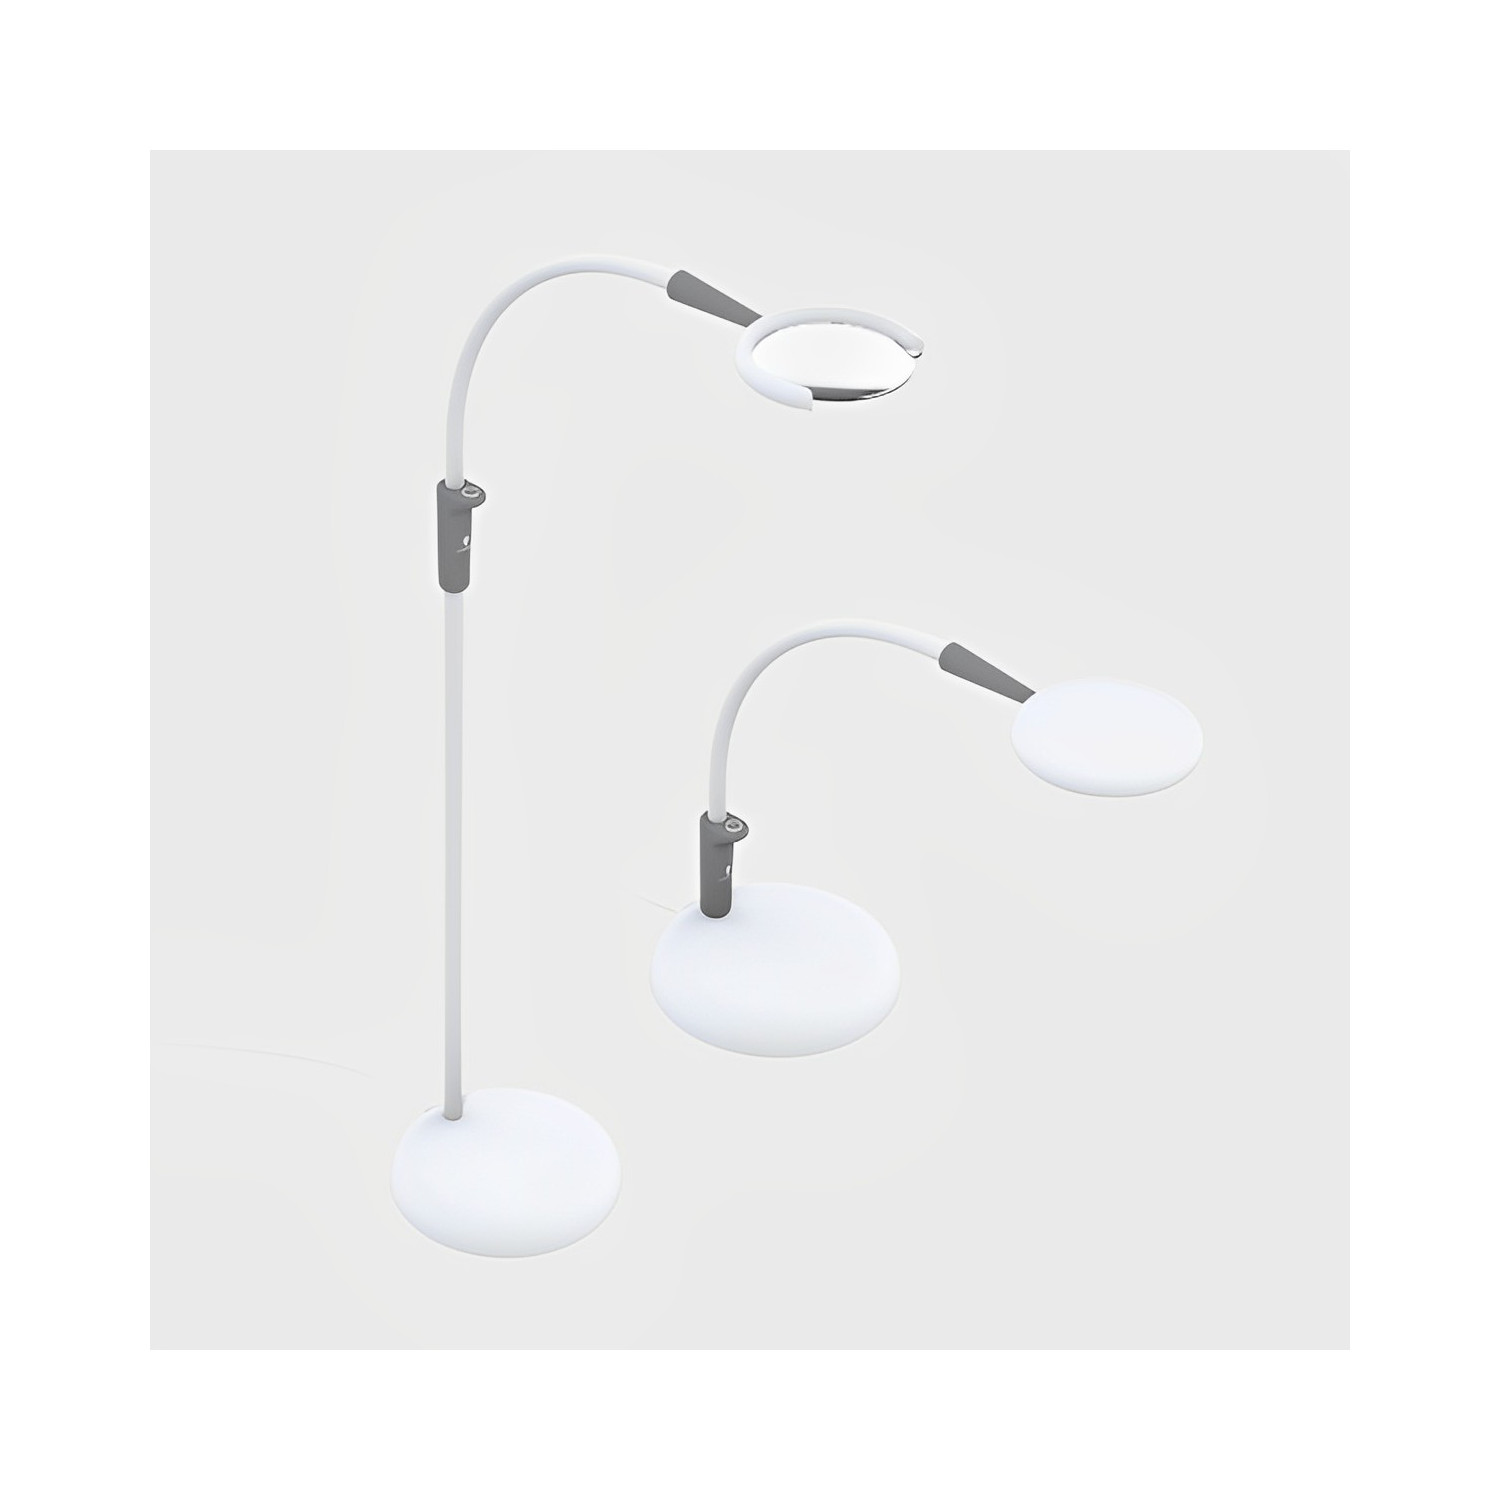 Éclairage LED pour machine à coudre, Lampe de travail flexible à